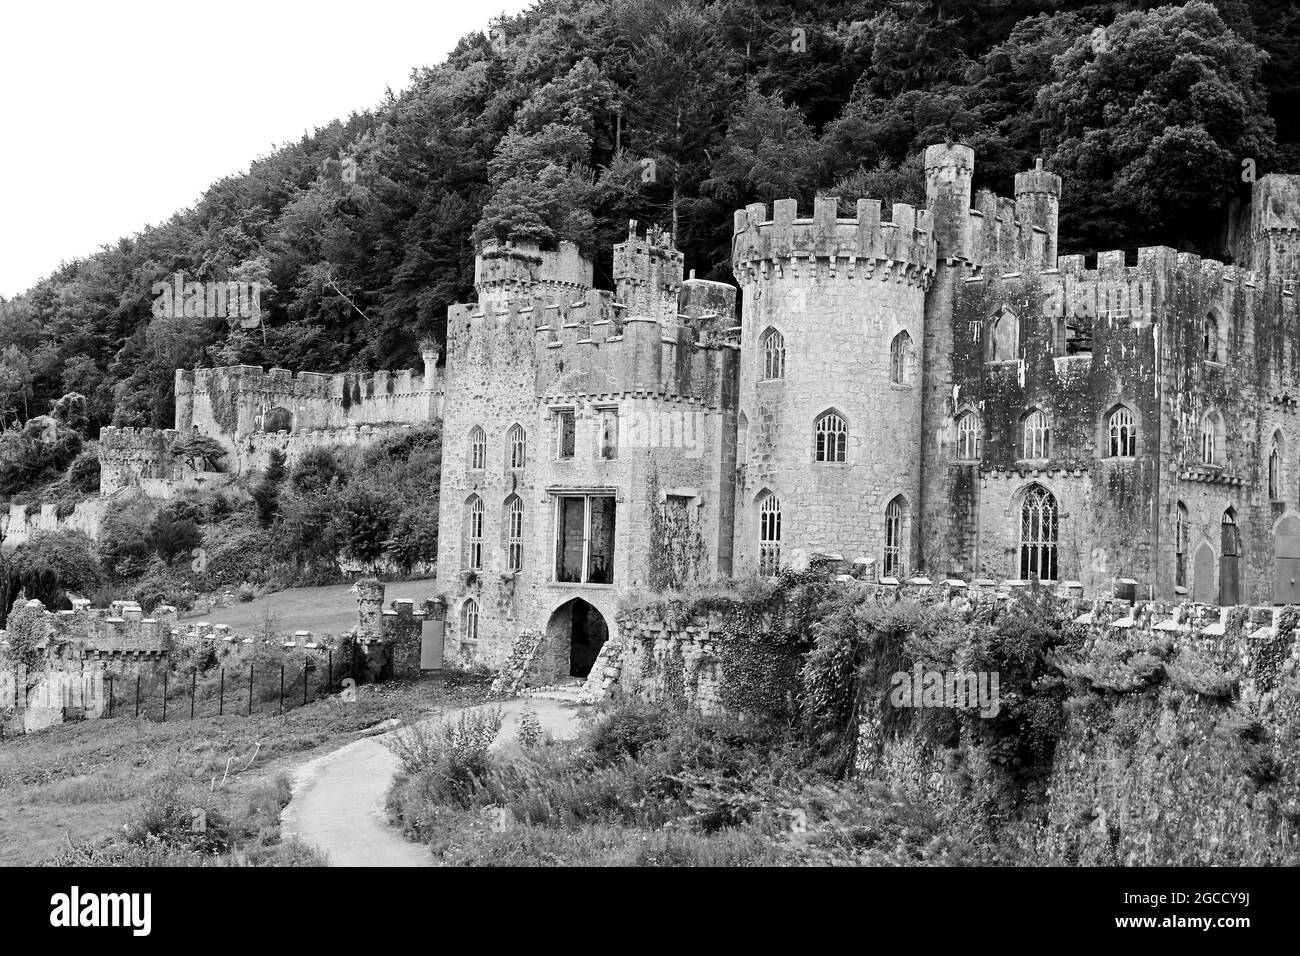 Le château de Gwrych est une maison de campagne classée au XIXe siècle près d'Abergele à Conwy, au pays de Galles Banque D'Images